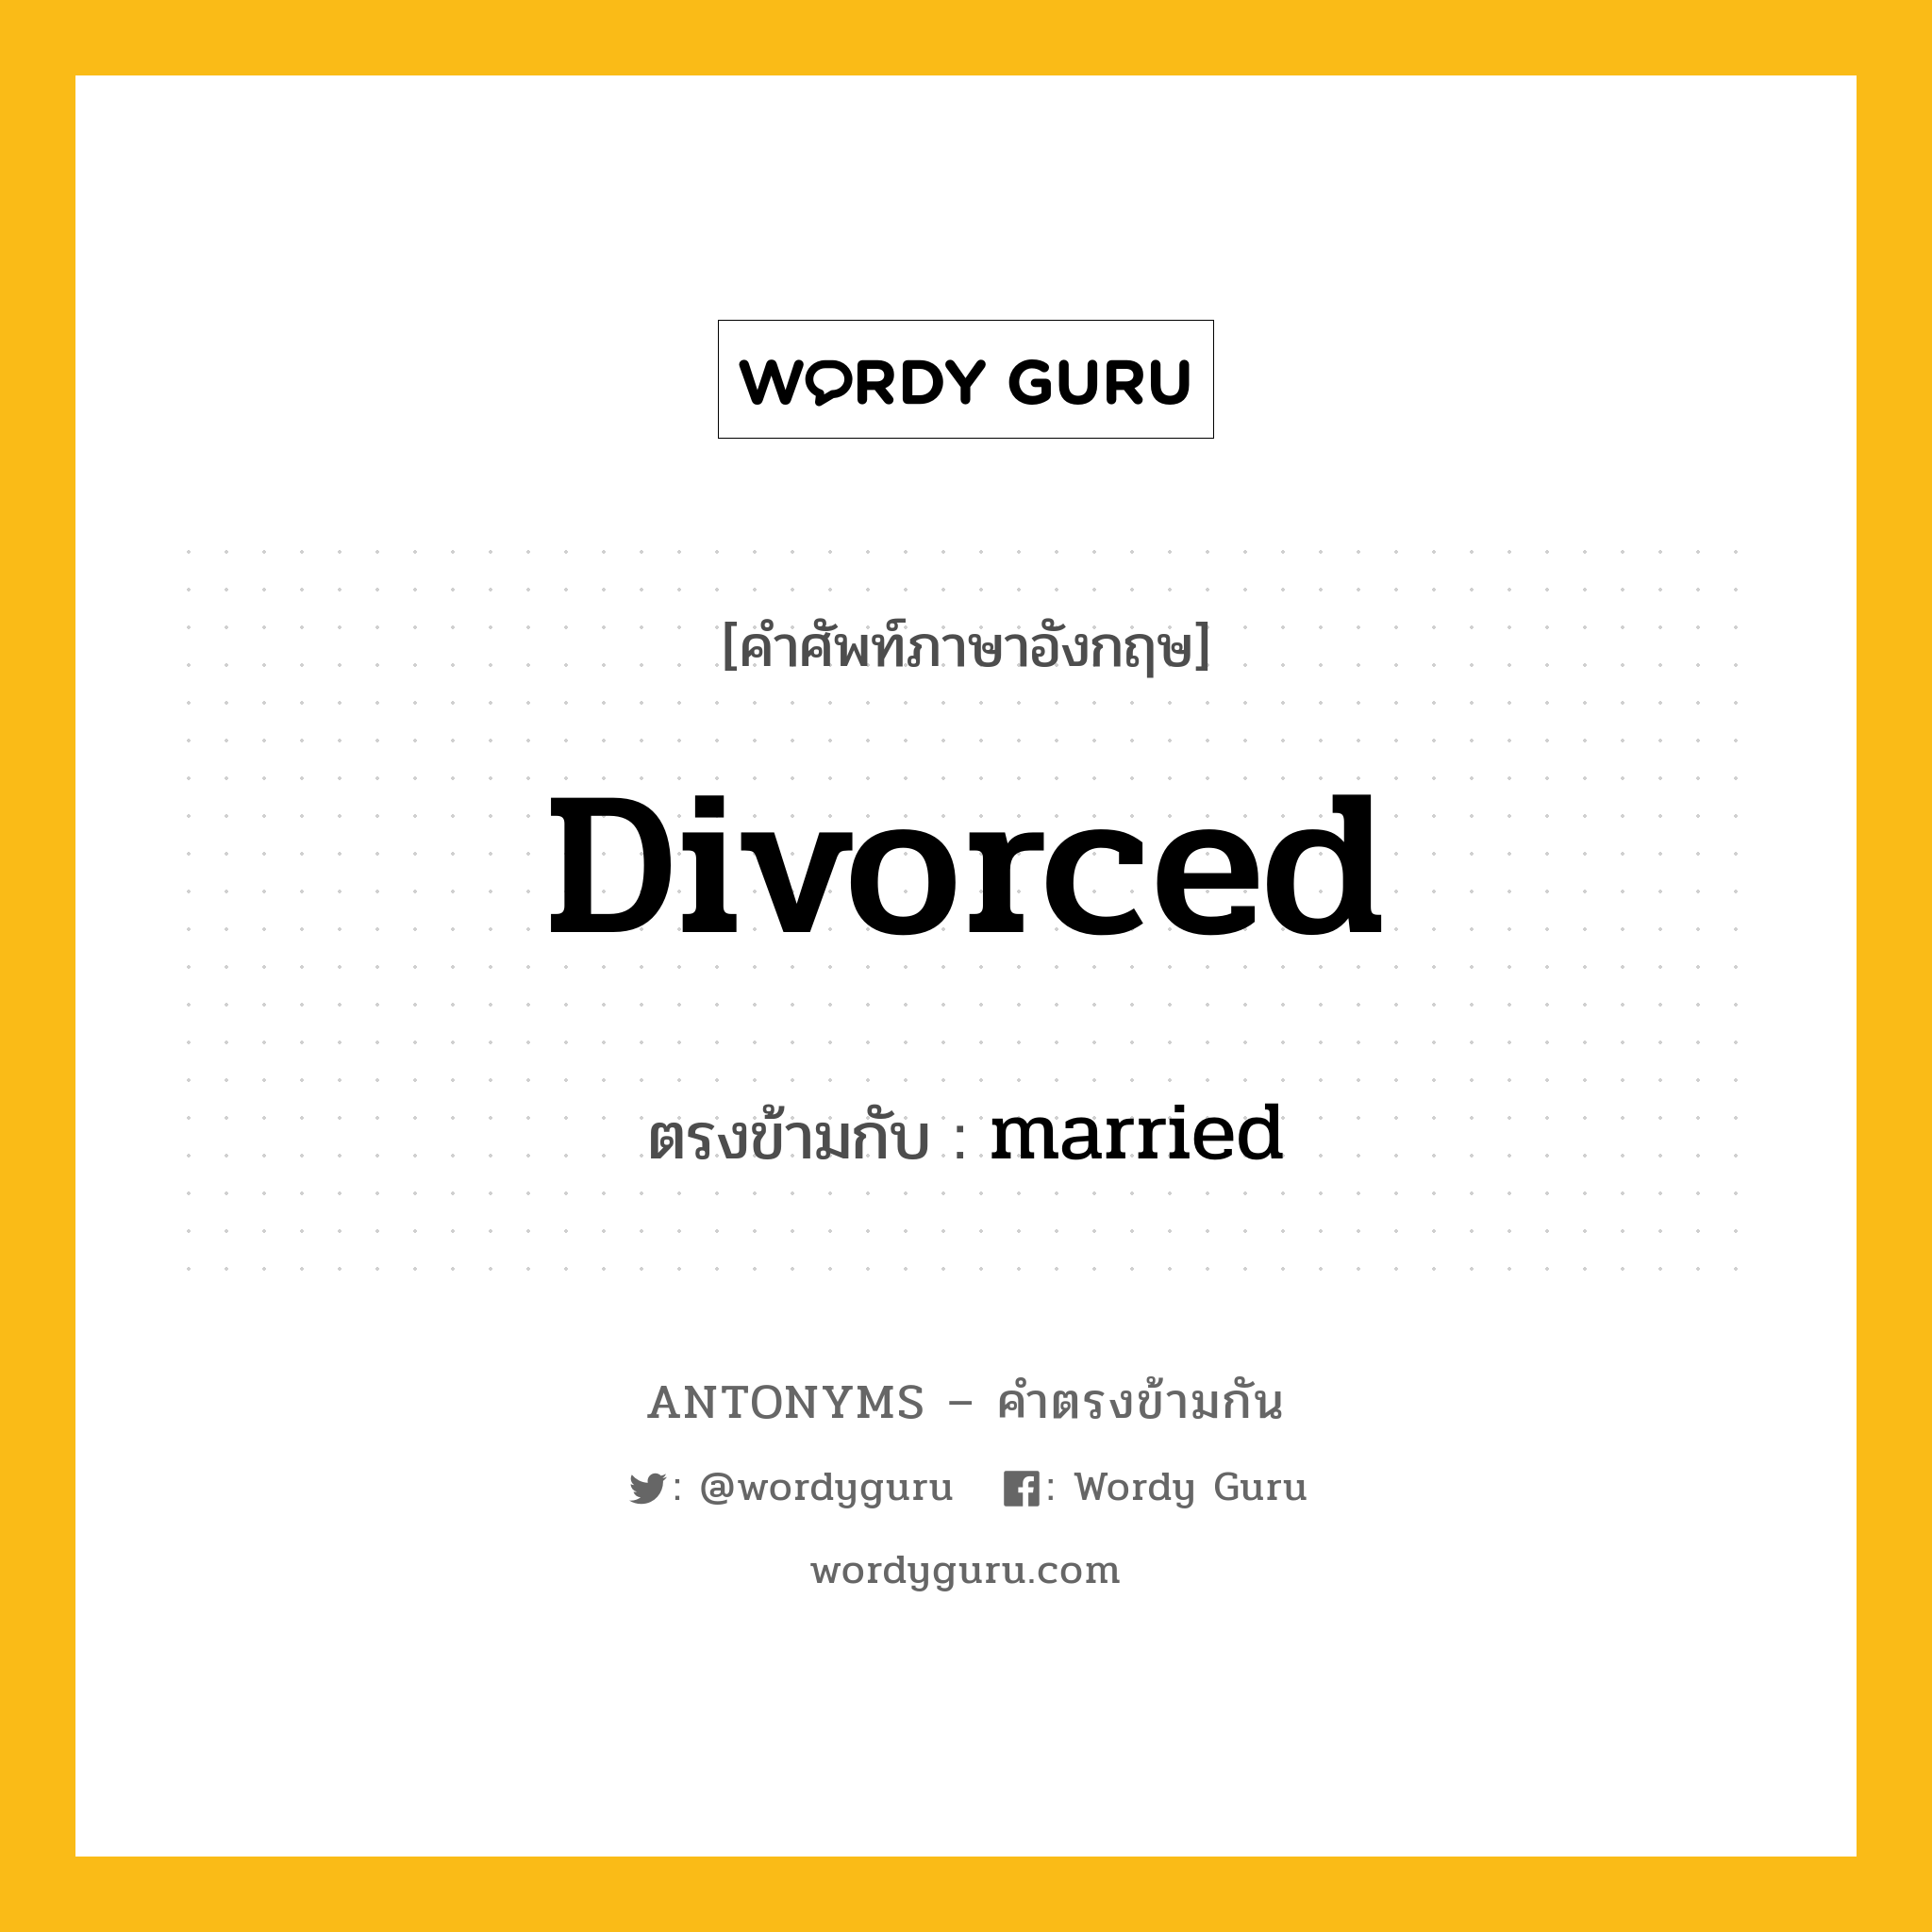 divorced เป็นคำตรงข้ามกับคำไหนบ้าง?, คำศัพท์ภาษาอังกฤษ divorced ตรงข้ามกับ married หมวด married